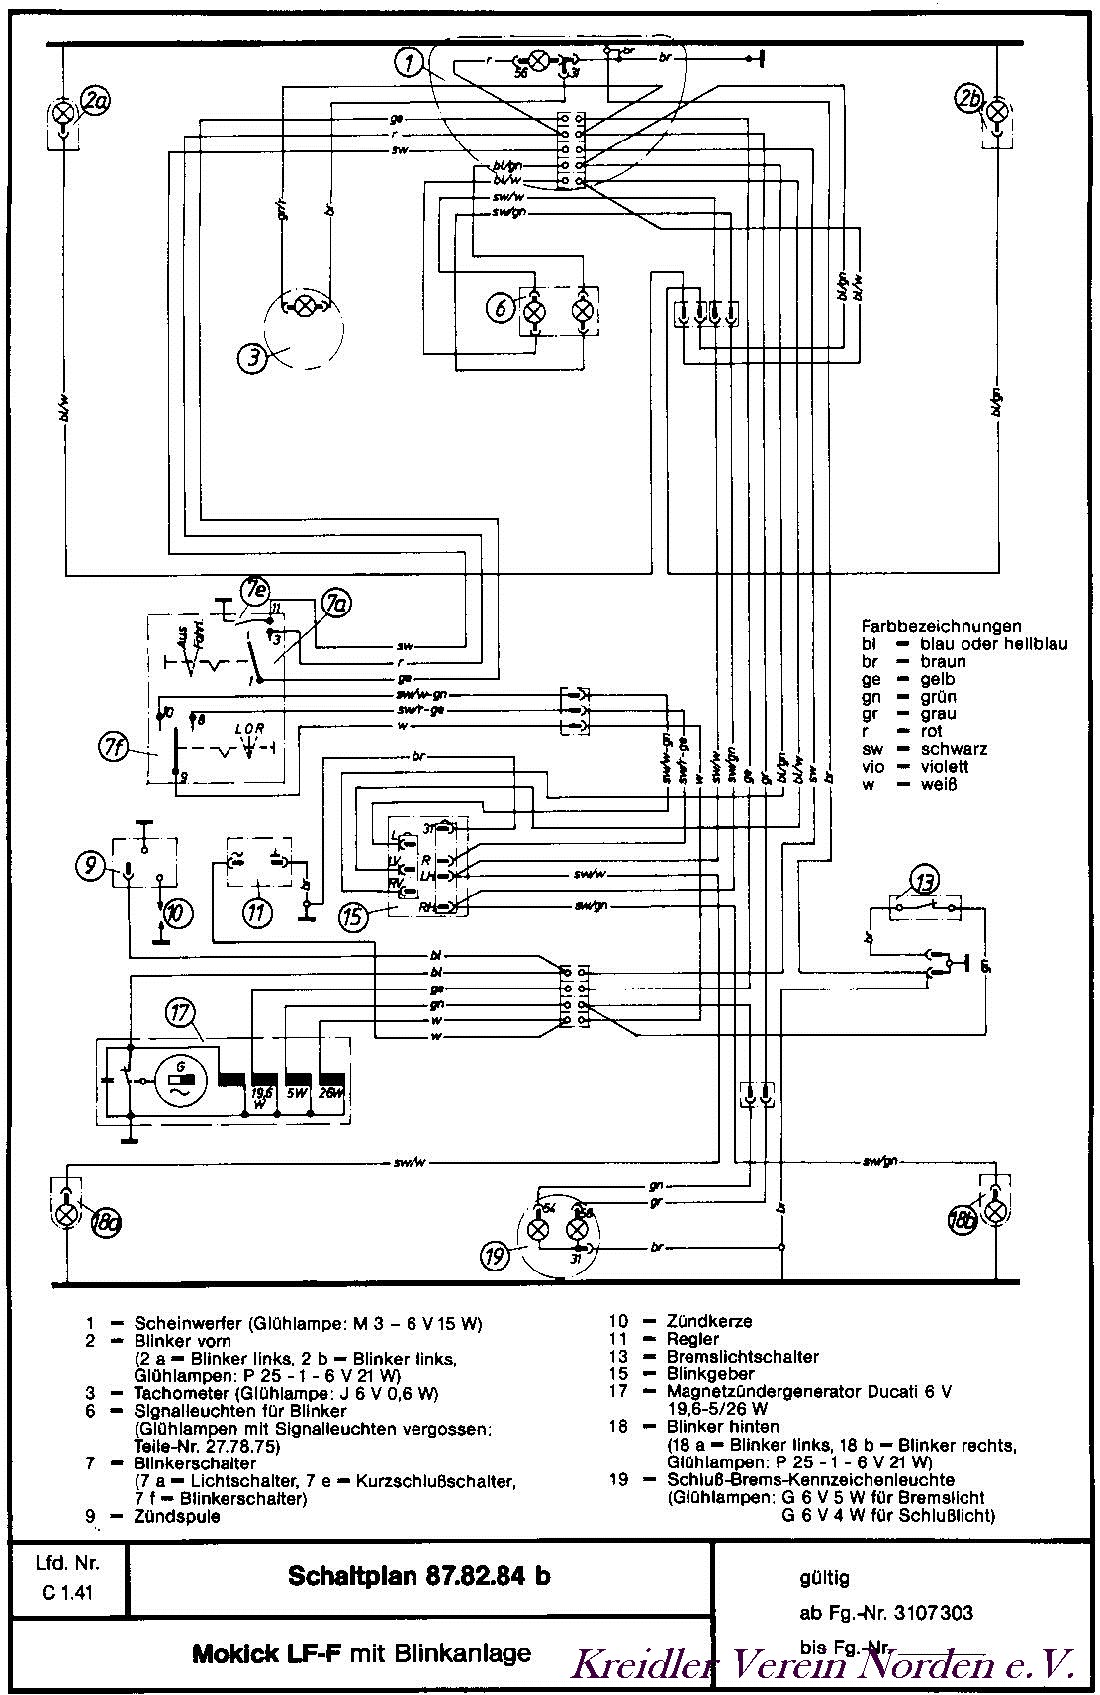 Schaltpläne | Kreidler Freunde Norden e.V. 12 v wiring diagram 